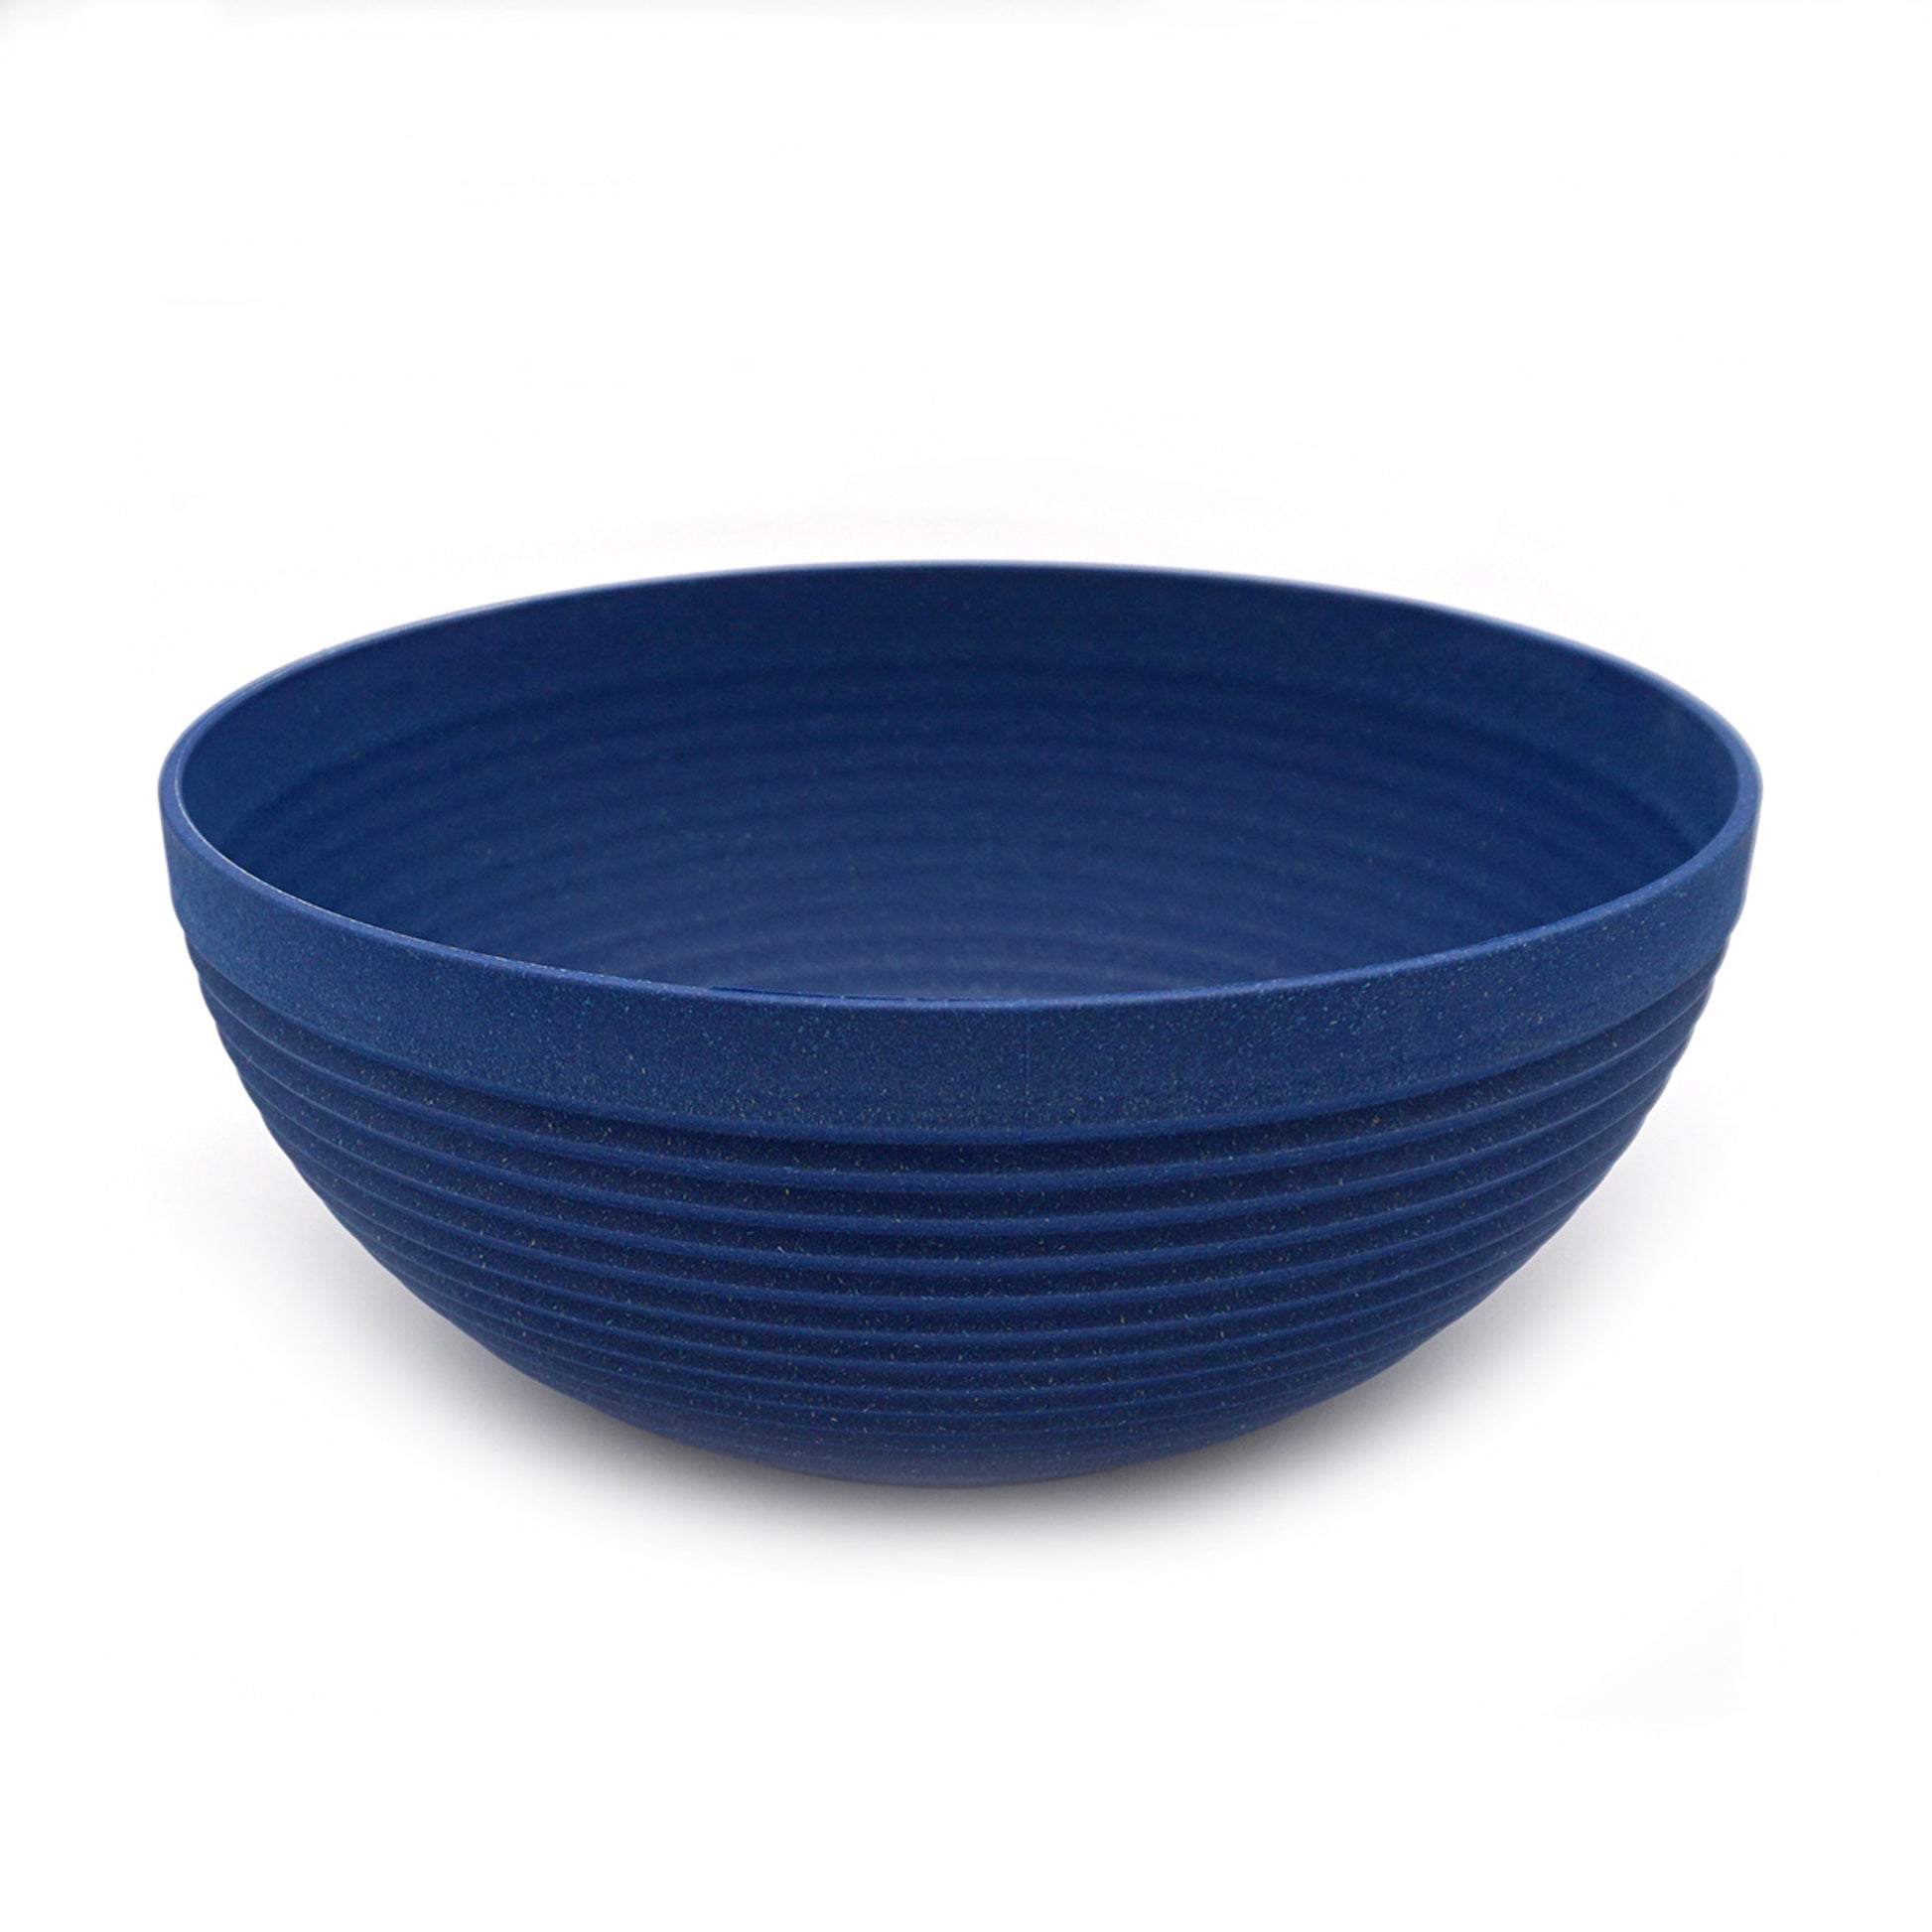 Lapis Blue Serving Bowl